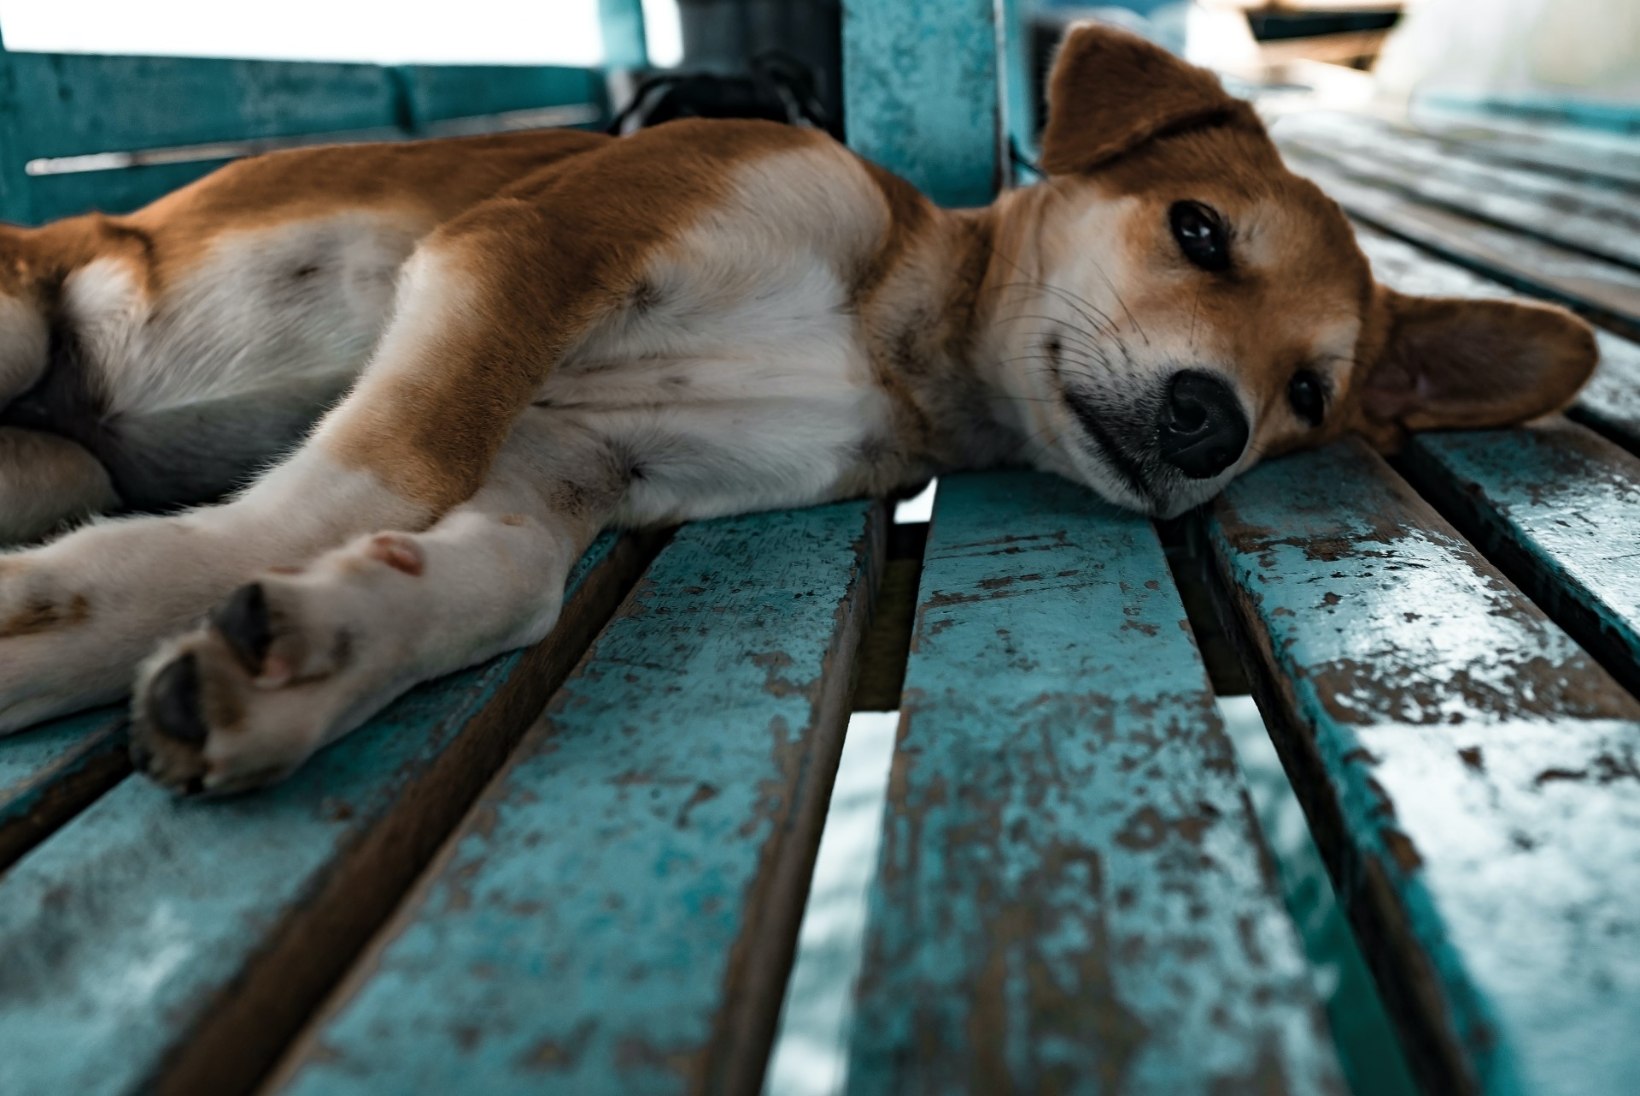 HUVITAVAD PÕHJUSED: miks koer aeg-ajalt kannatanut teeskleb ja kust see komme tuleb?